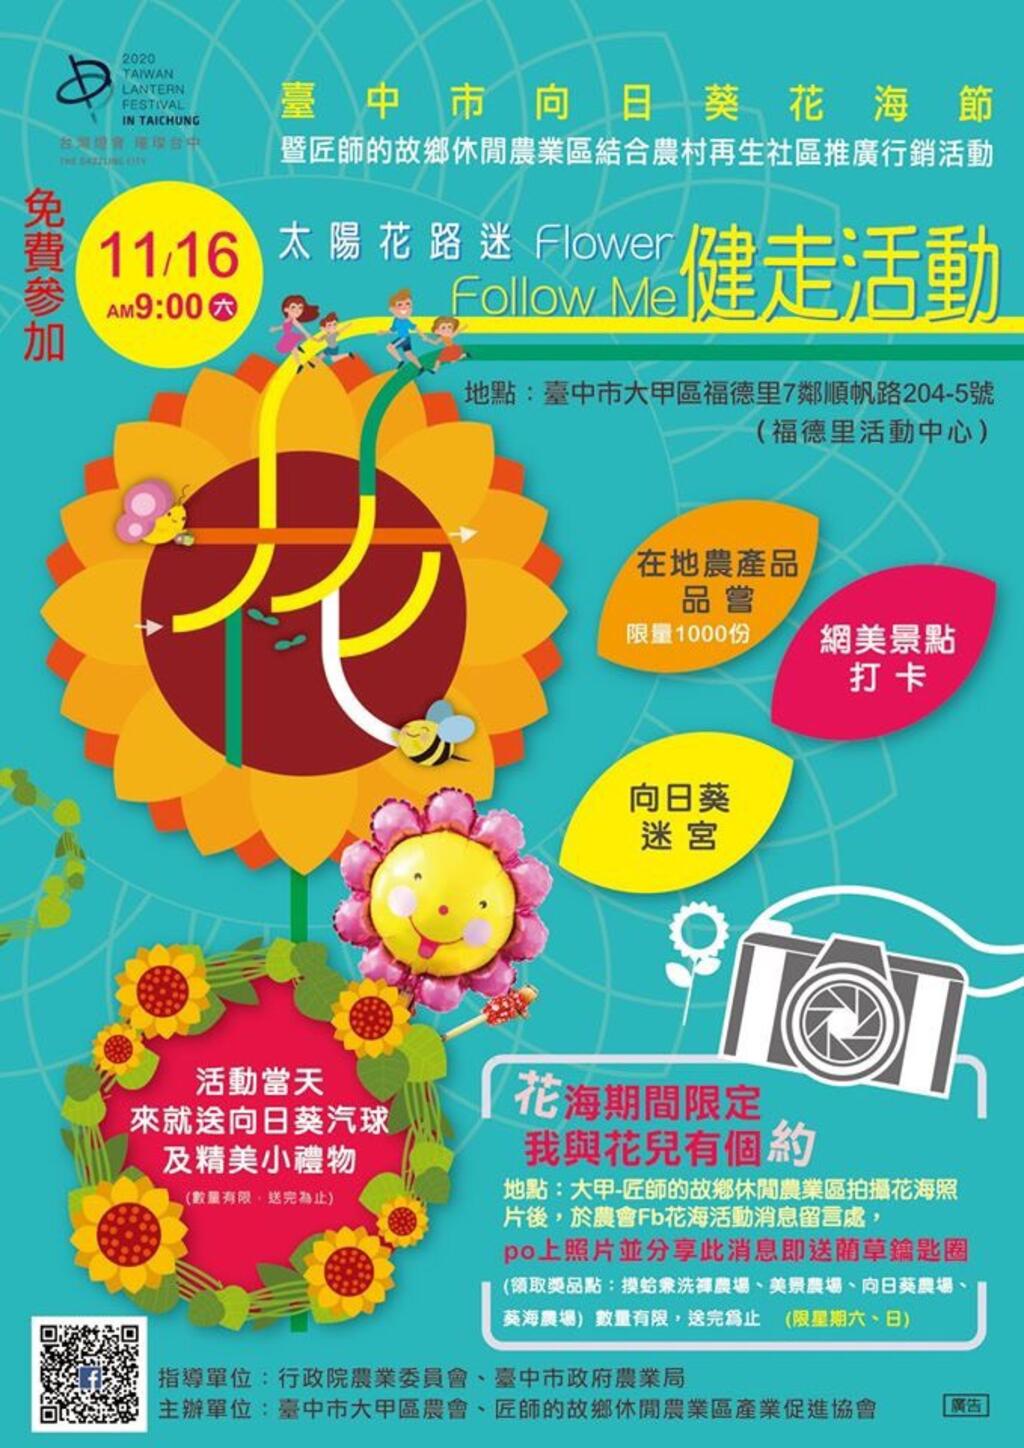 台中周末活動懶人包(11/15-17)